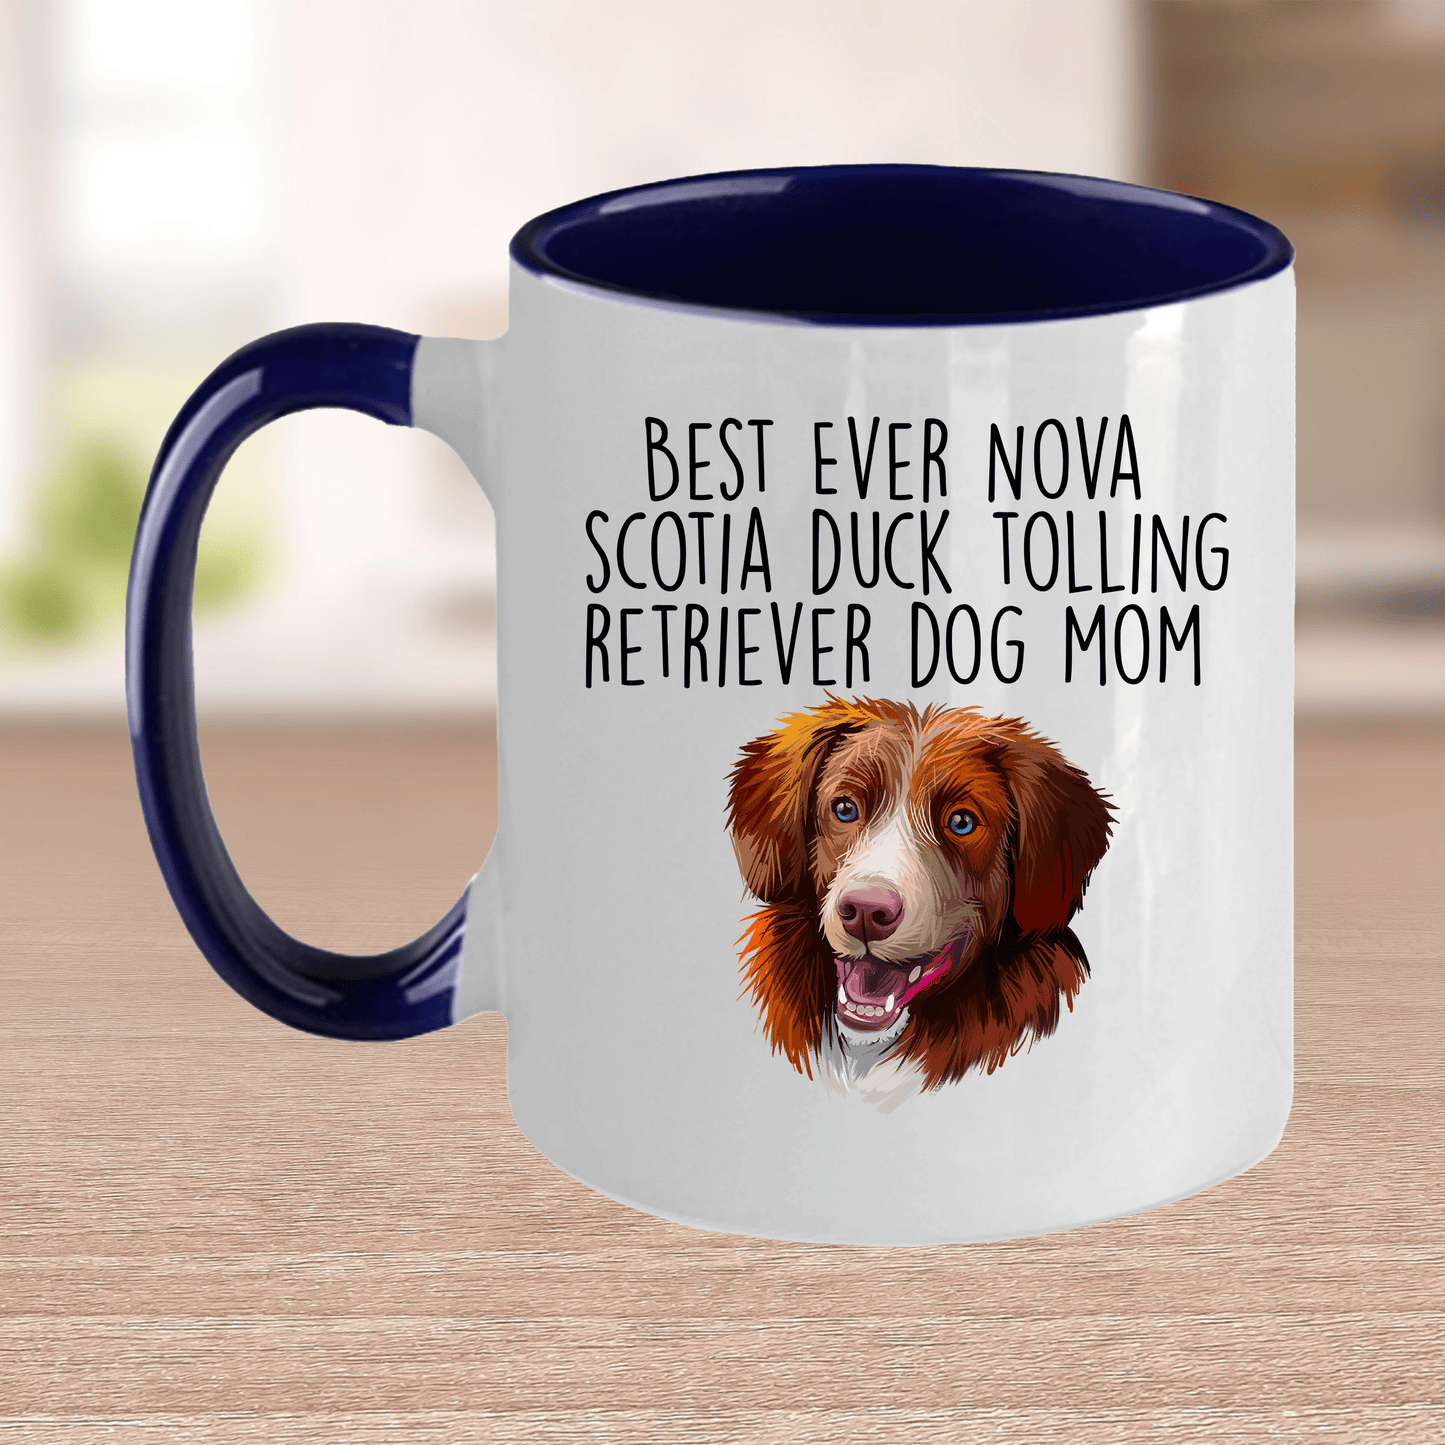 Best Ever Nova Scotia Duck Tolling Retriever Dog Mom Ceramic Coffee Mug